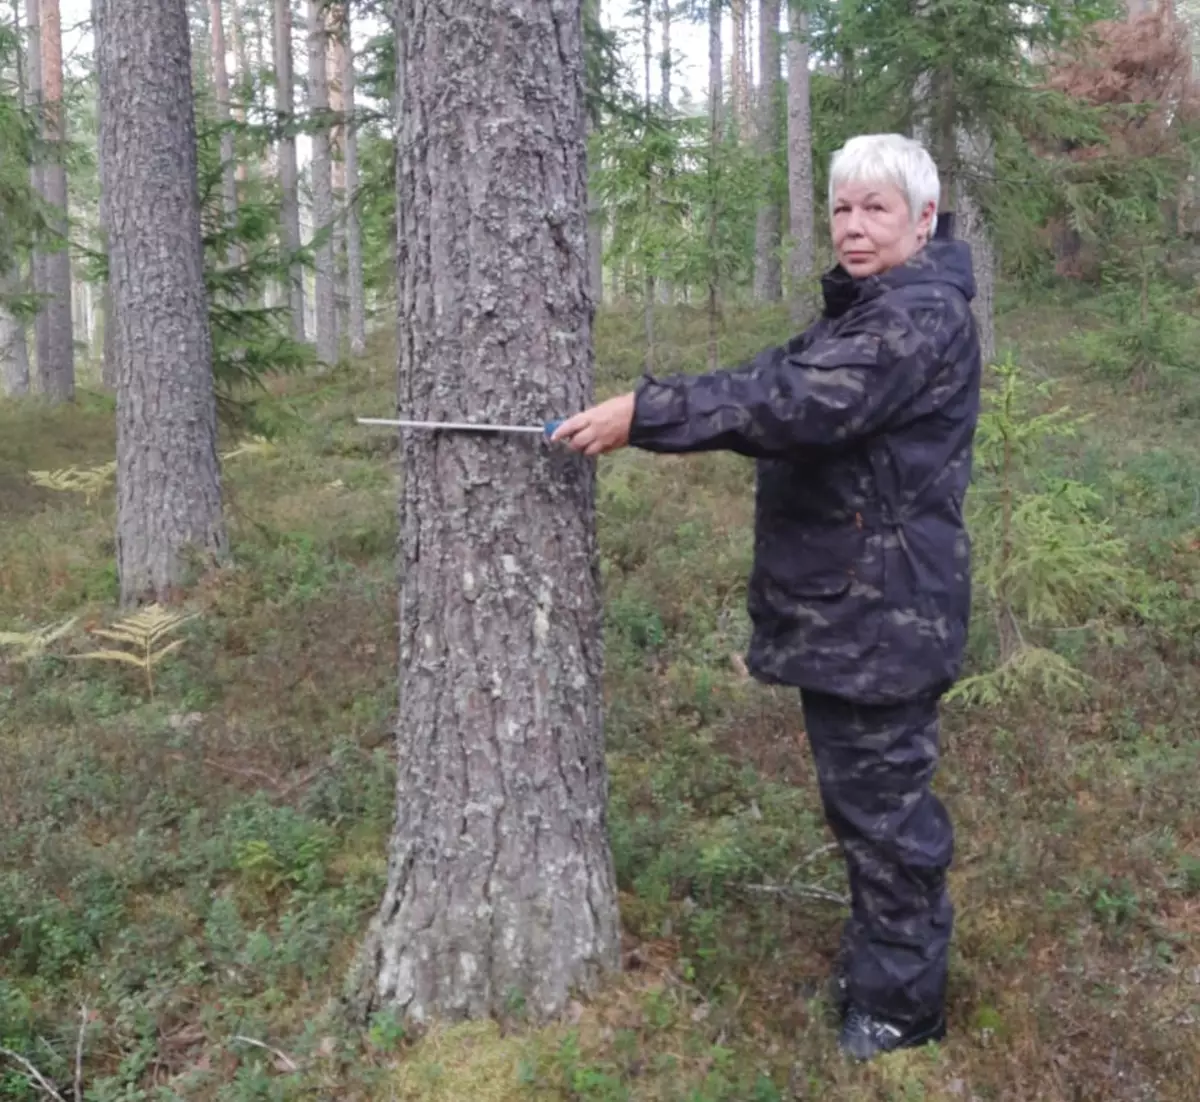 Марина Викторовна Нестерова как 30 лет назад, так и сейчас каждый день наматывает километры по своим лесным владениям и следит за их состоянием